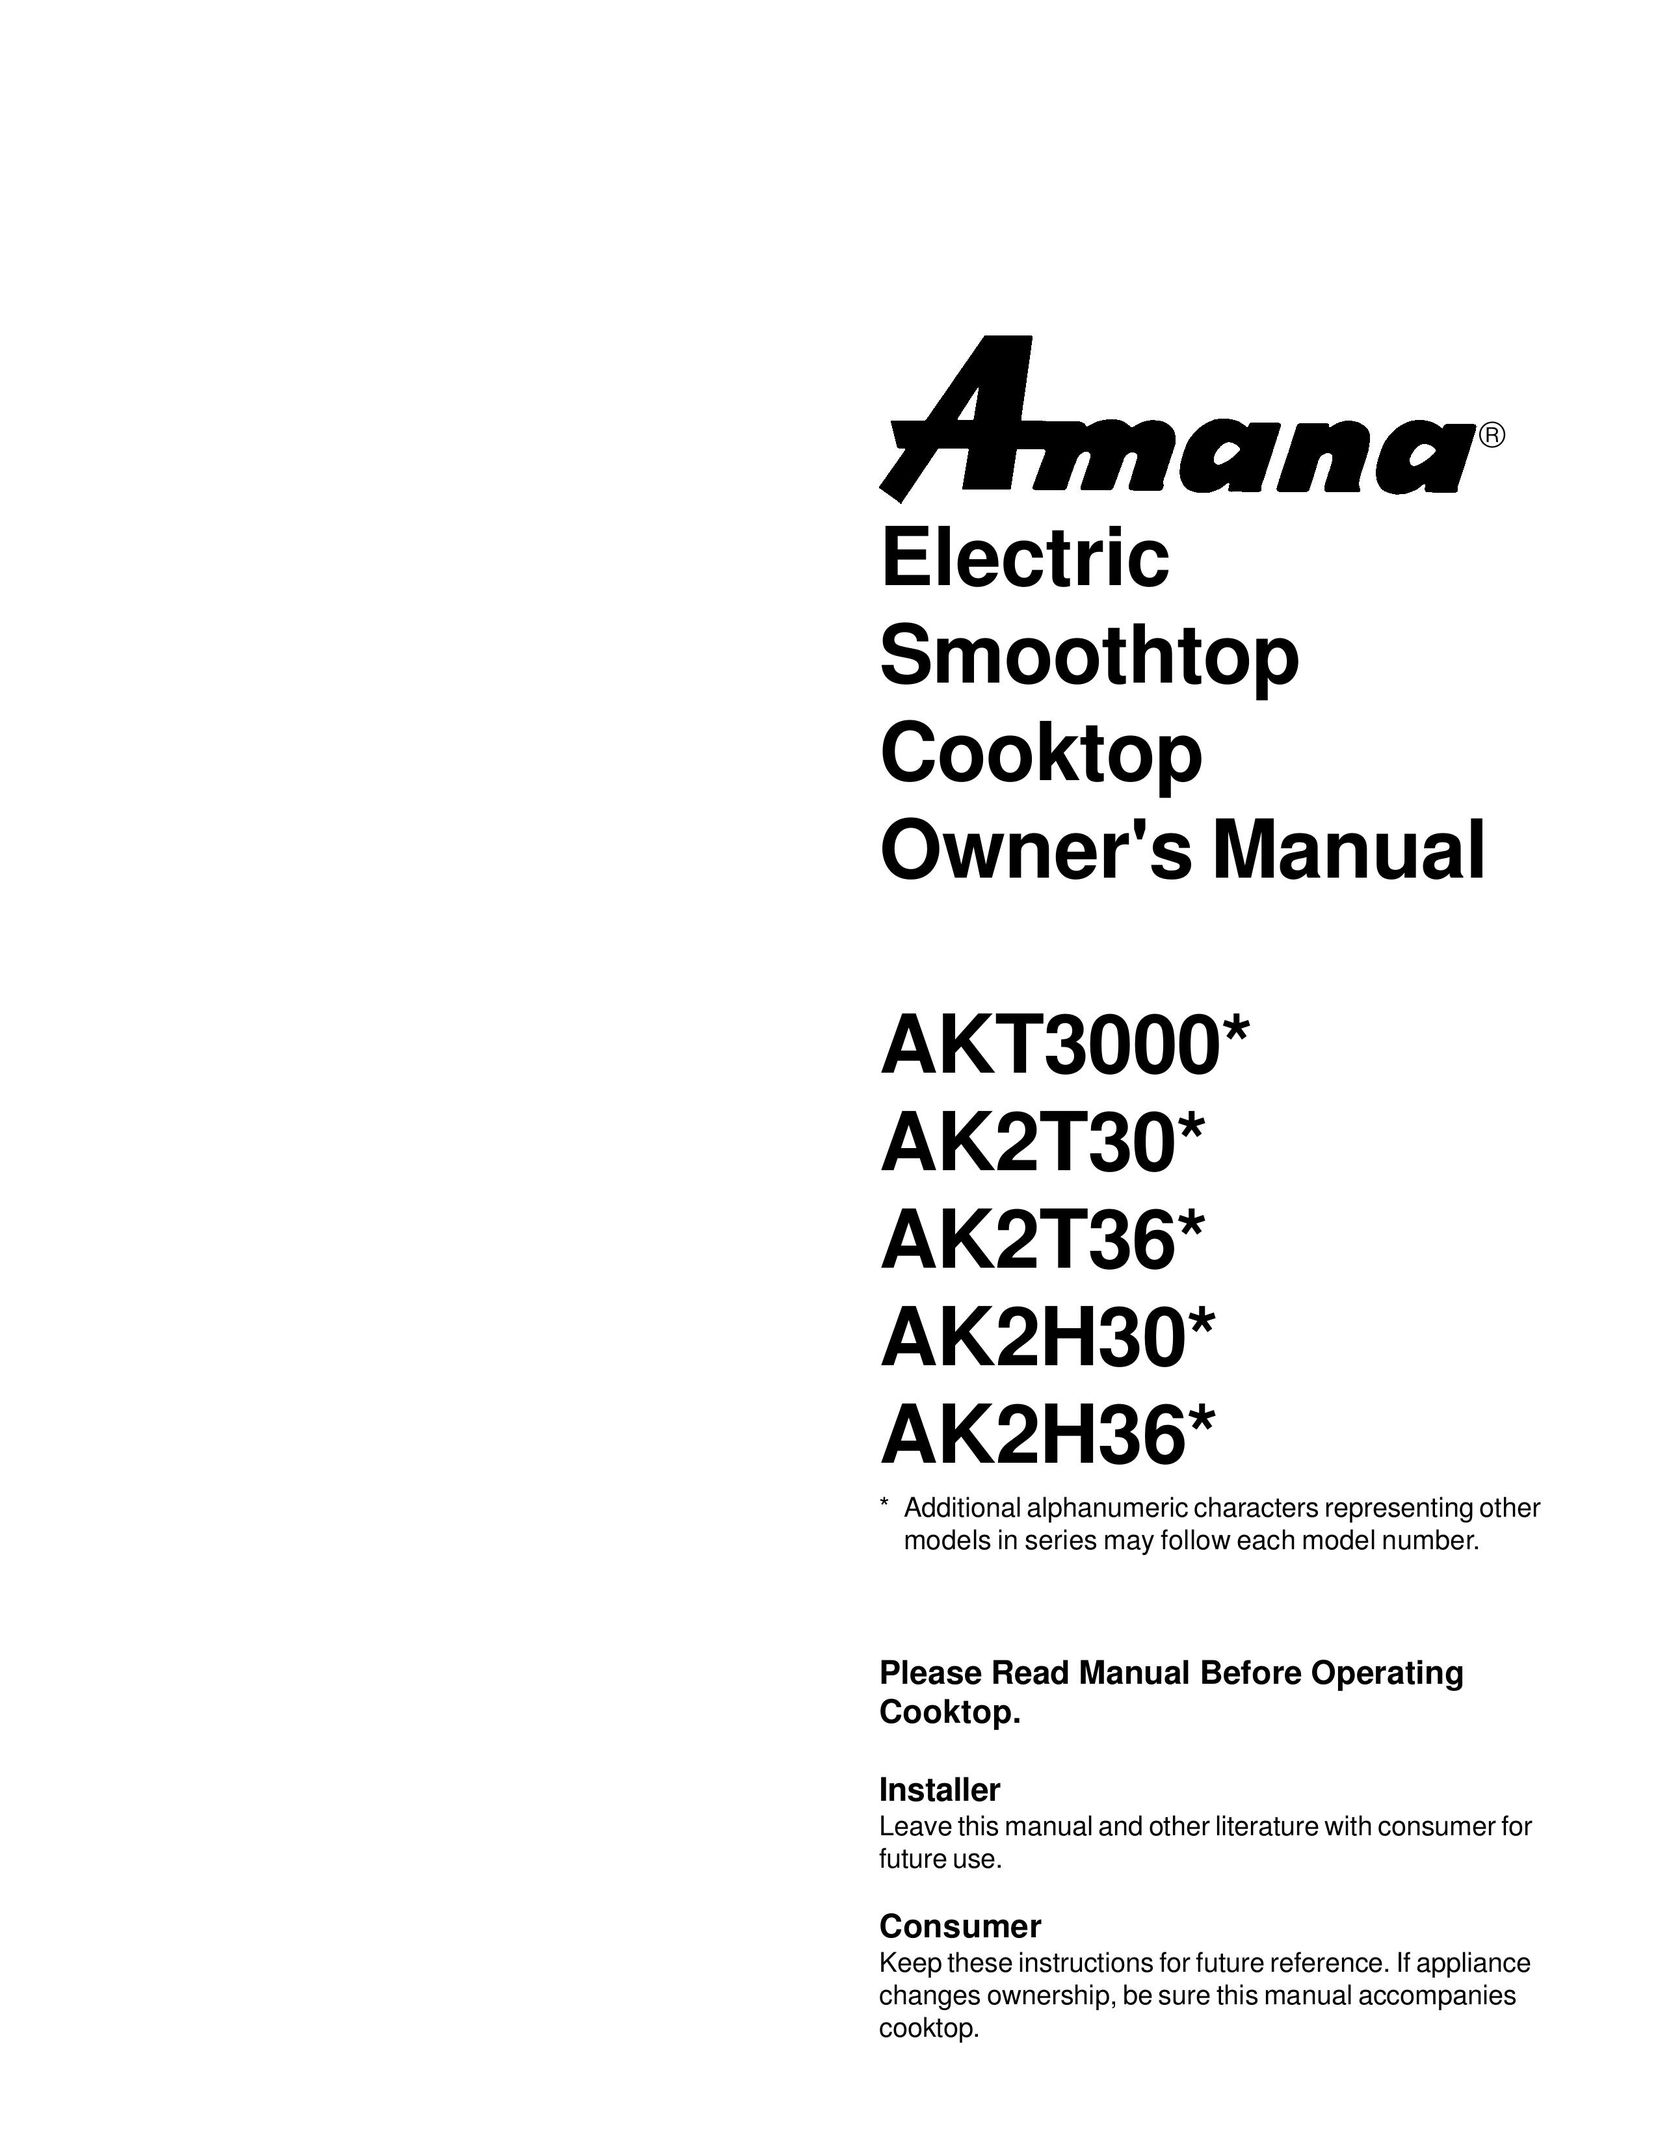 Amana AK2H30* Cooktop User Manual